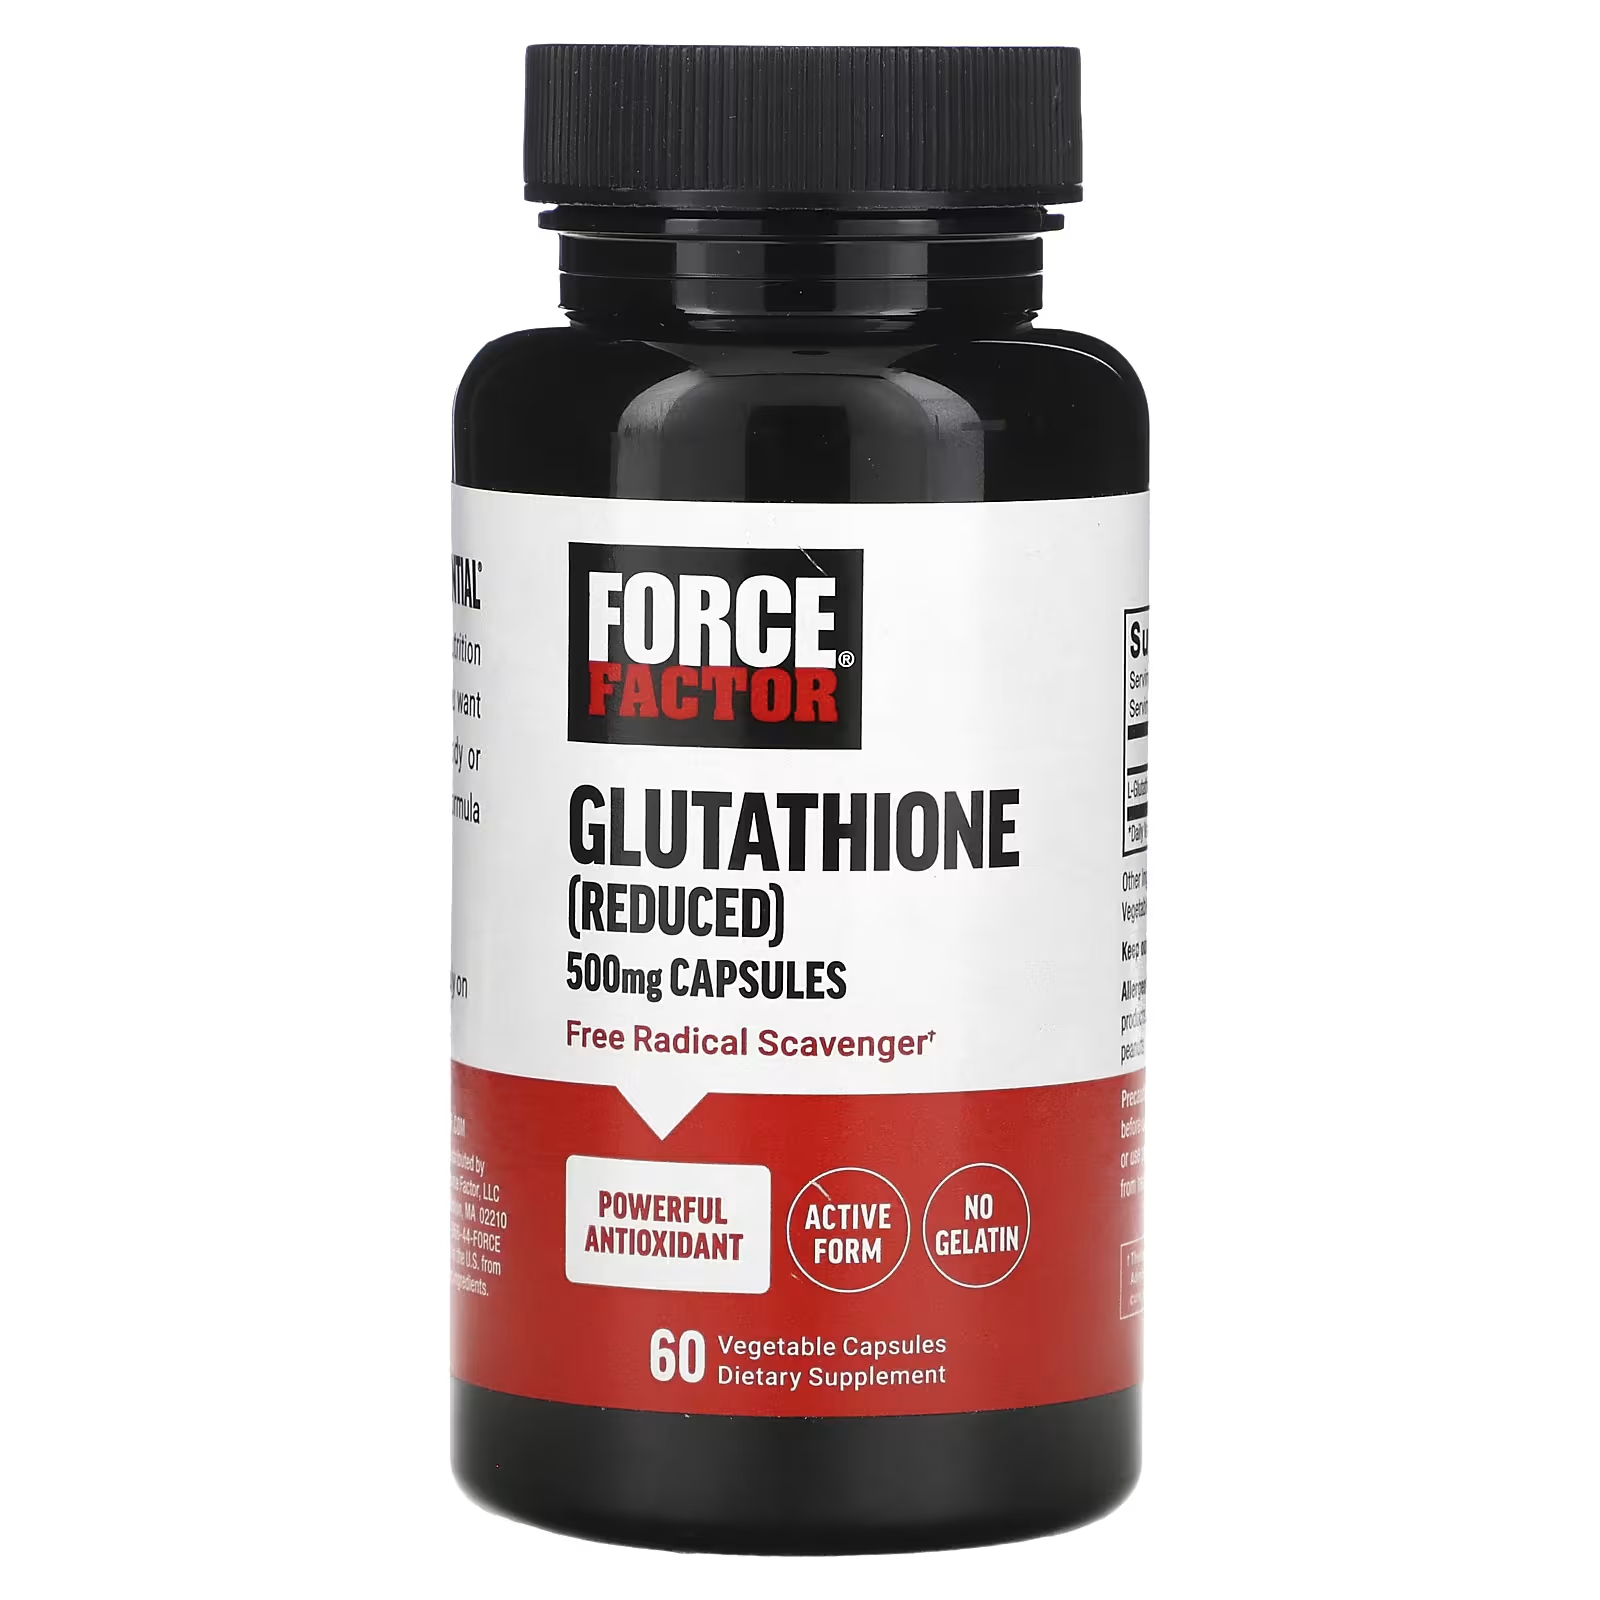 Force Factor Глутатион (восстановленный) 500 мг, 60 растительных капсул force factor кордицепс 500 мг 60 капсул